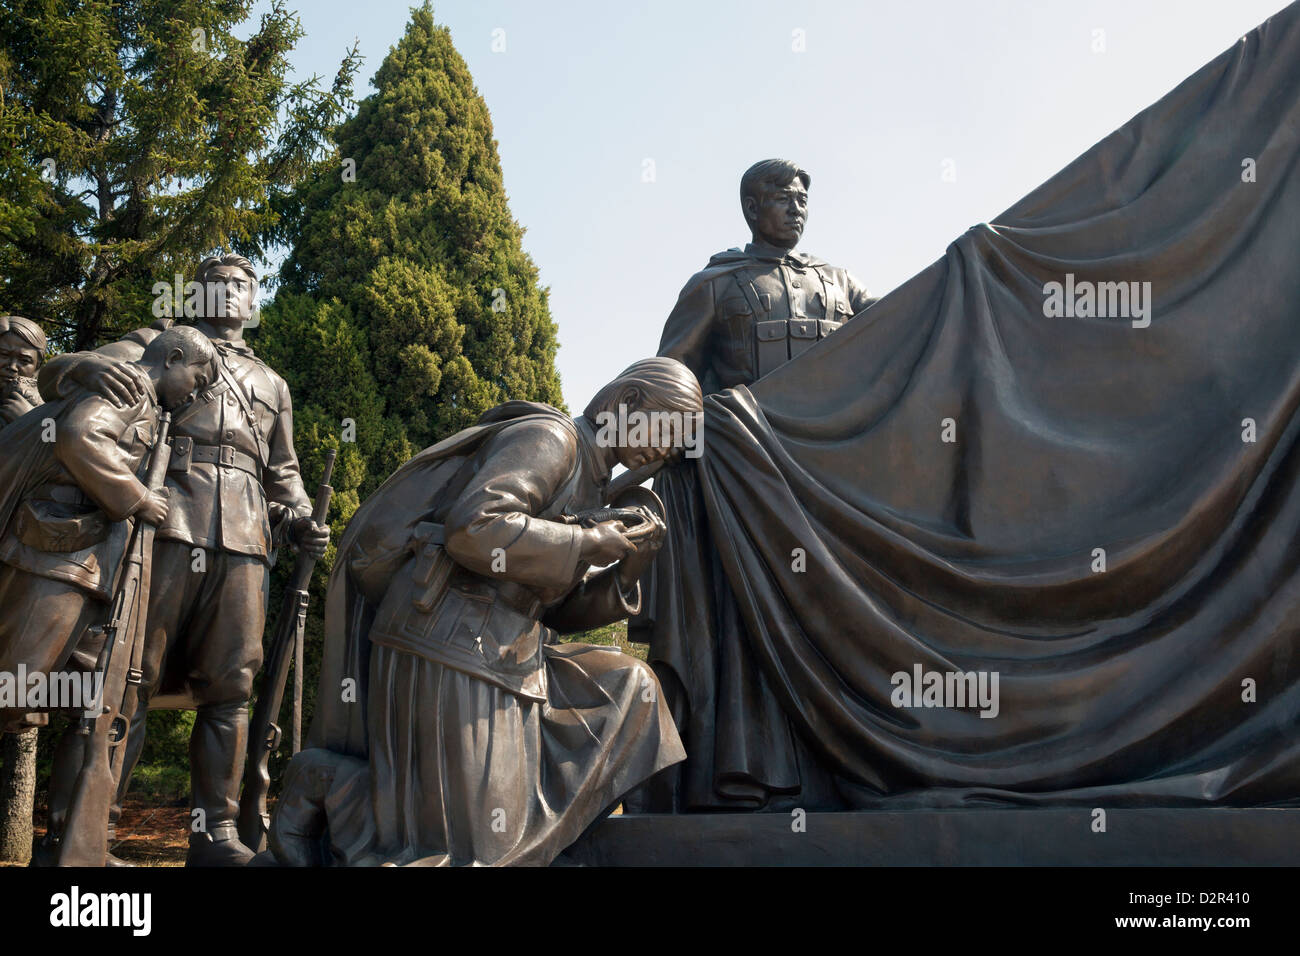 Cimetière des martyrs révolutionnaires, Pyongyang, République populaire démocratique de Corée (RPDC), la Corée du Nord, d'Asie Banque D'Images